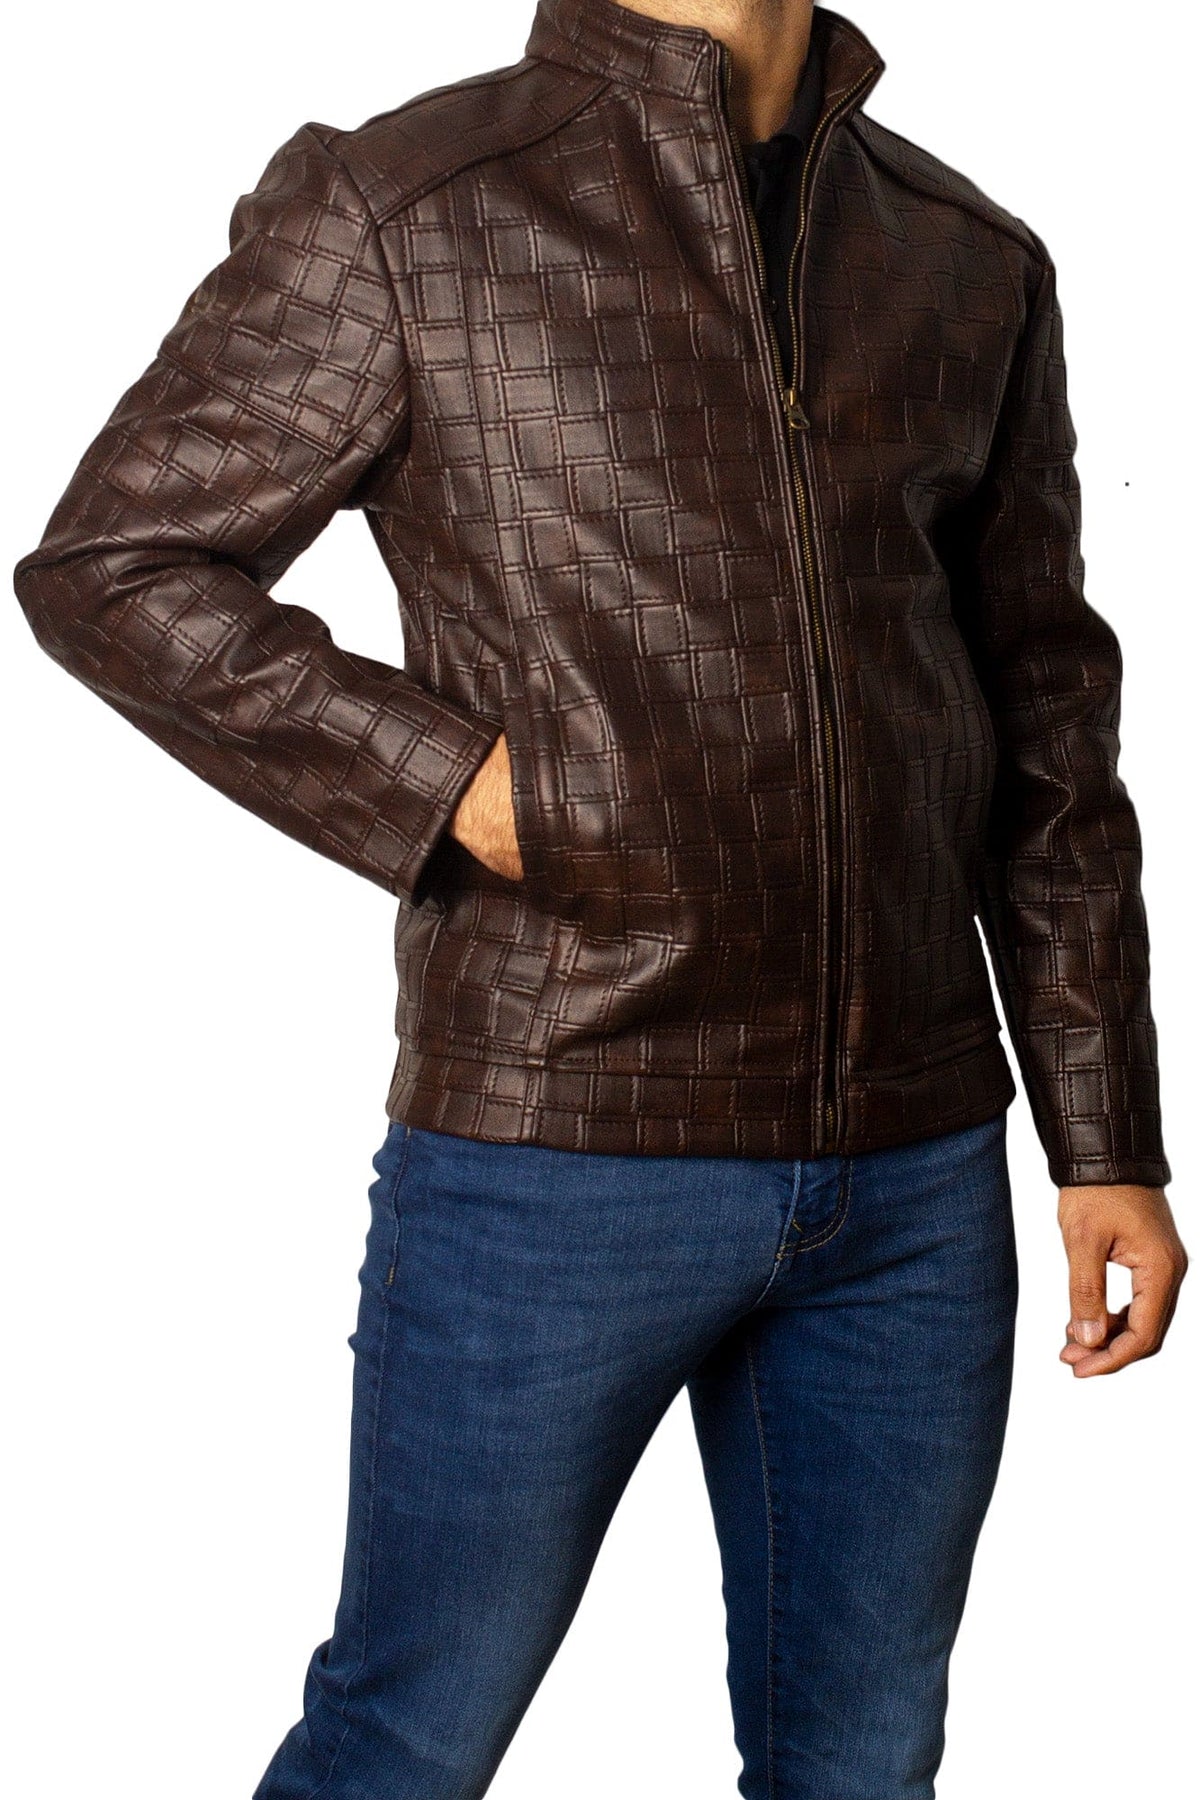 Men's Faux Leather Jacket Jk-0358 Coffee